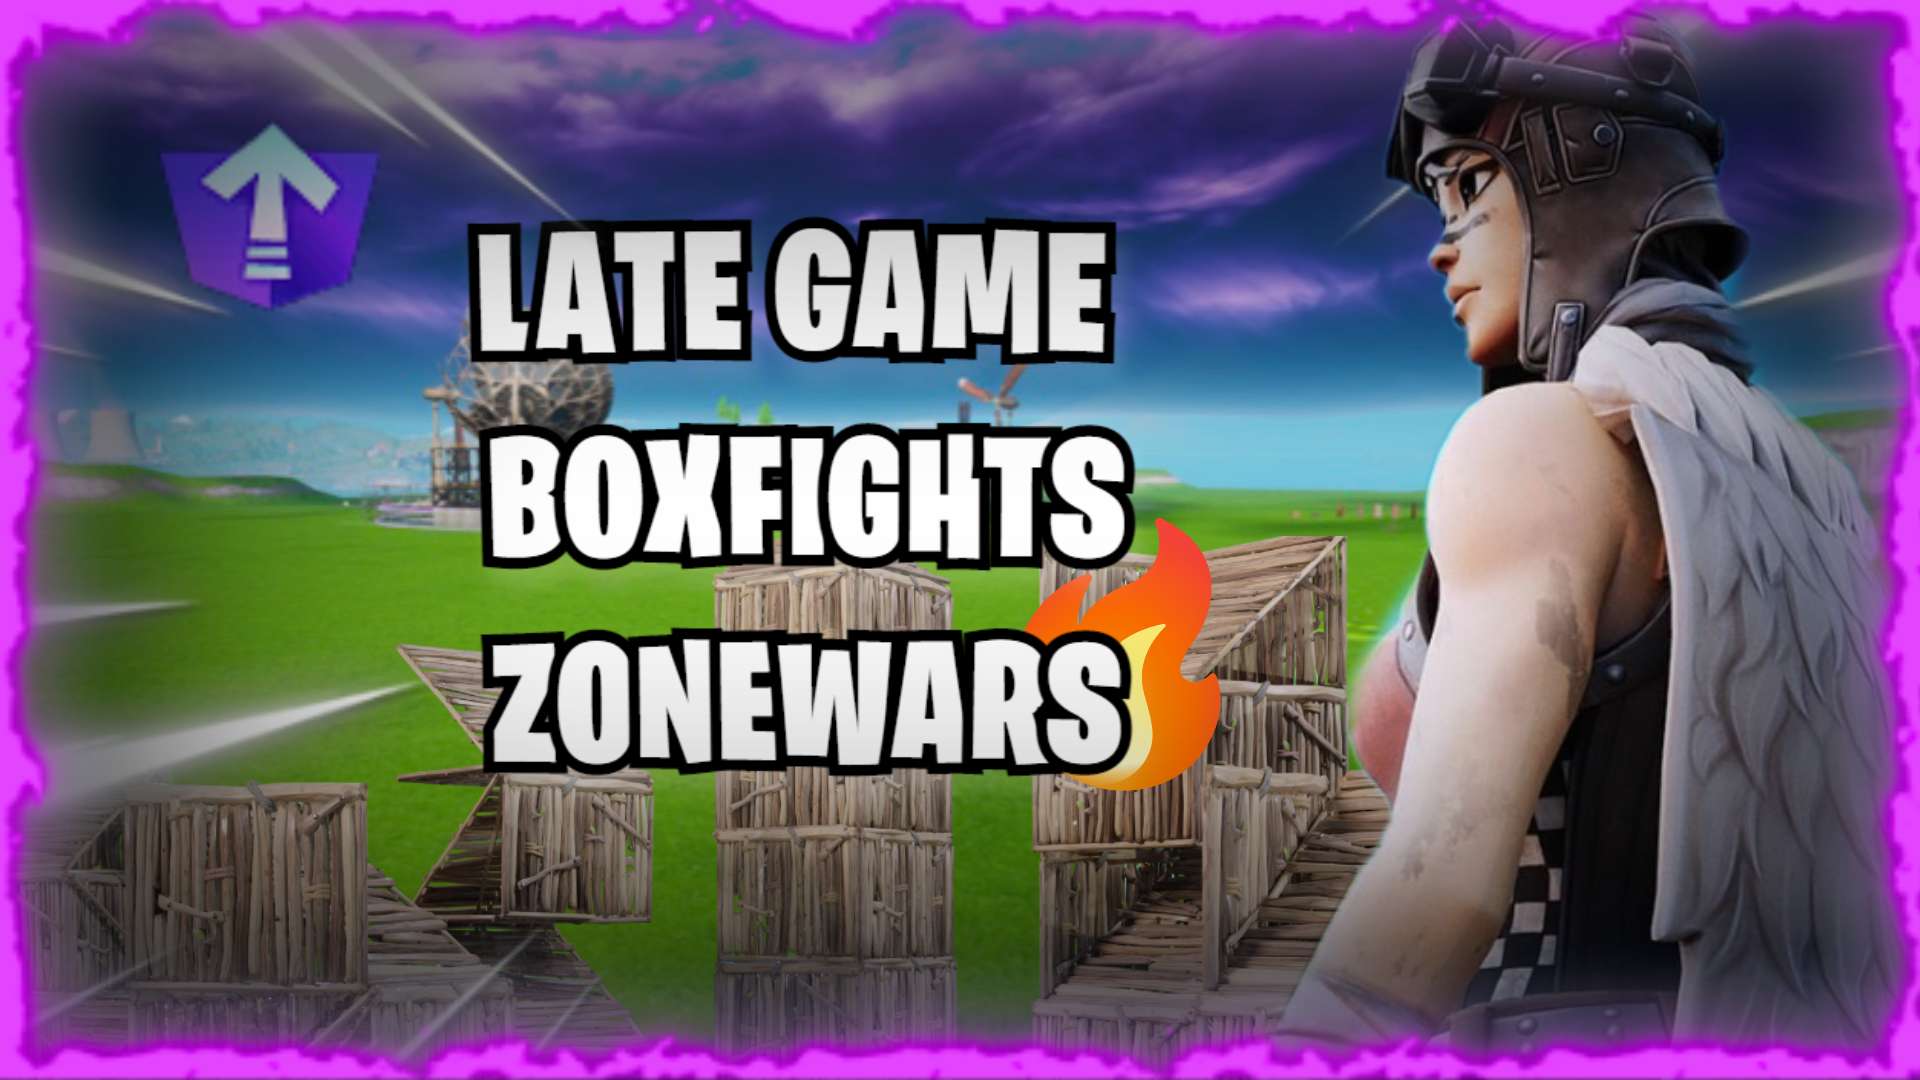 LATE GAME/BOXFIGHTS/ZONEWARS 32 PLAYERS